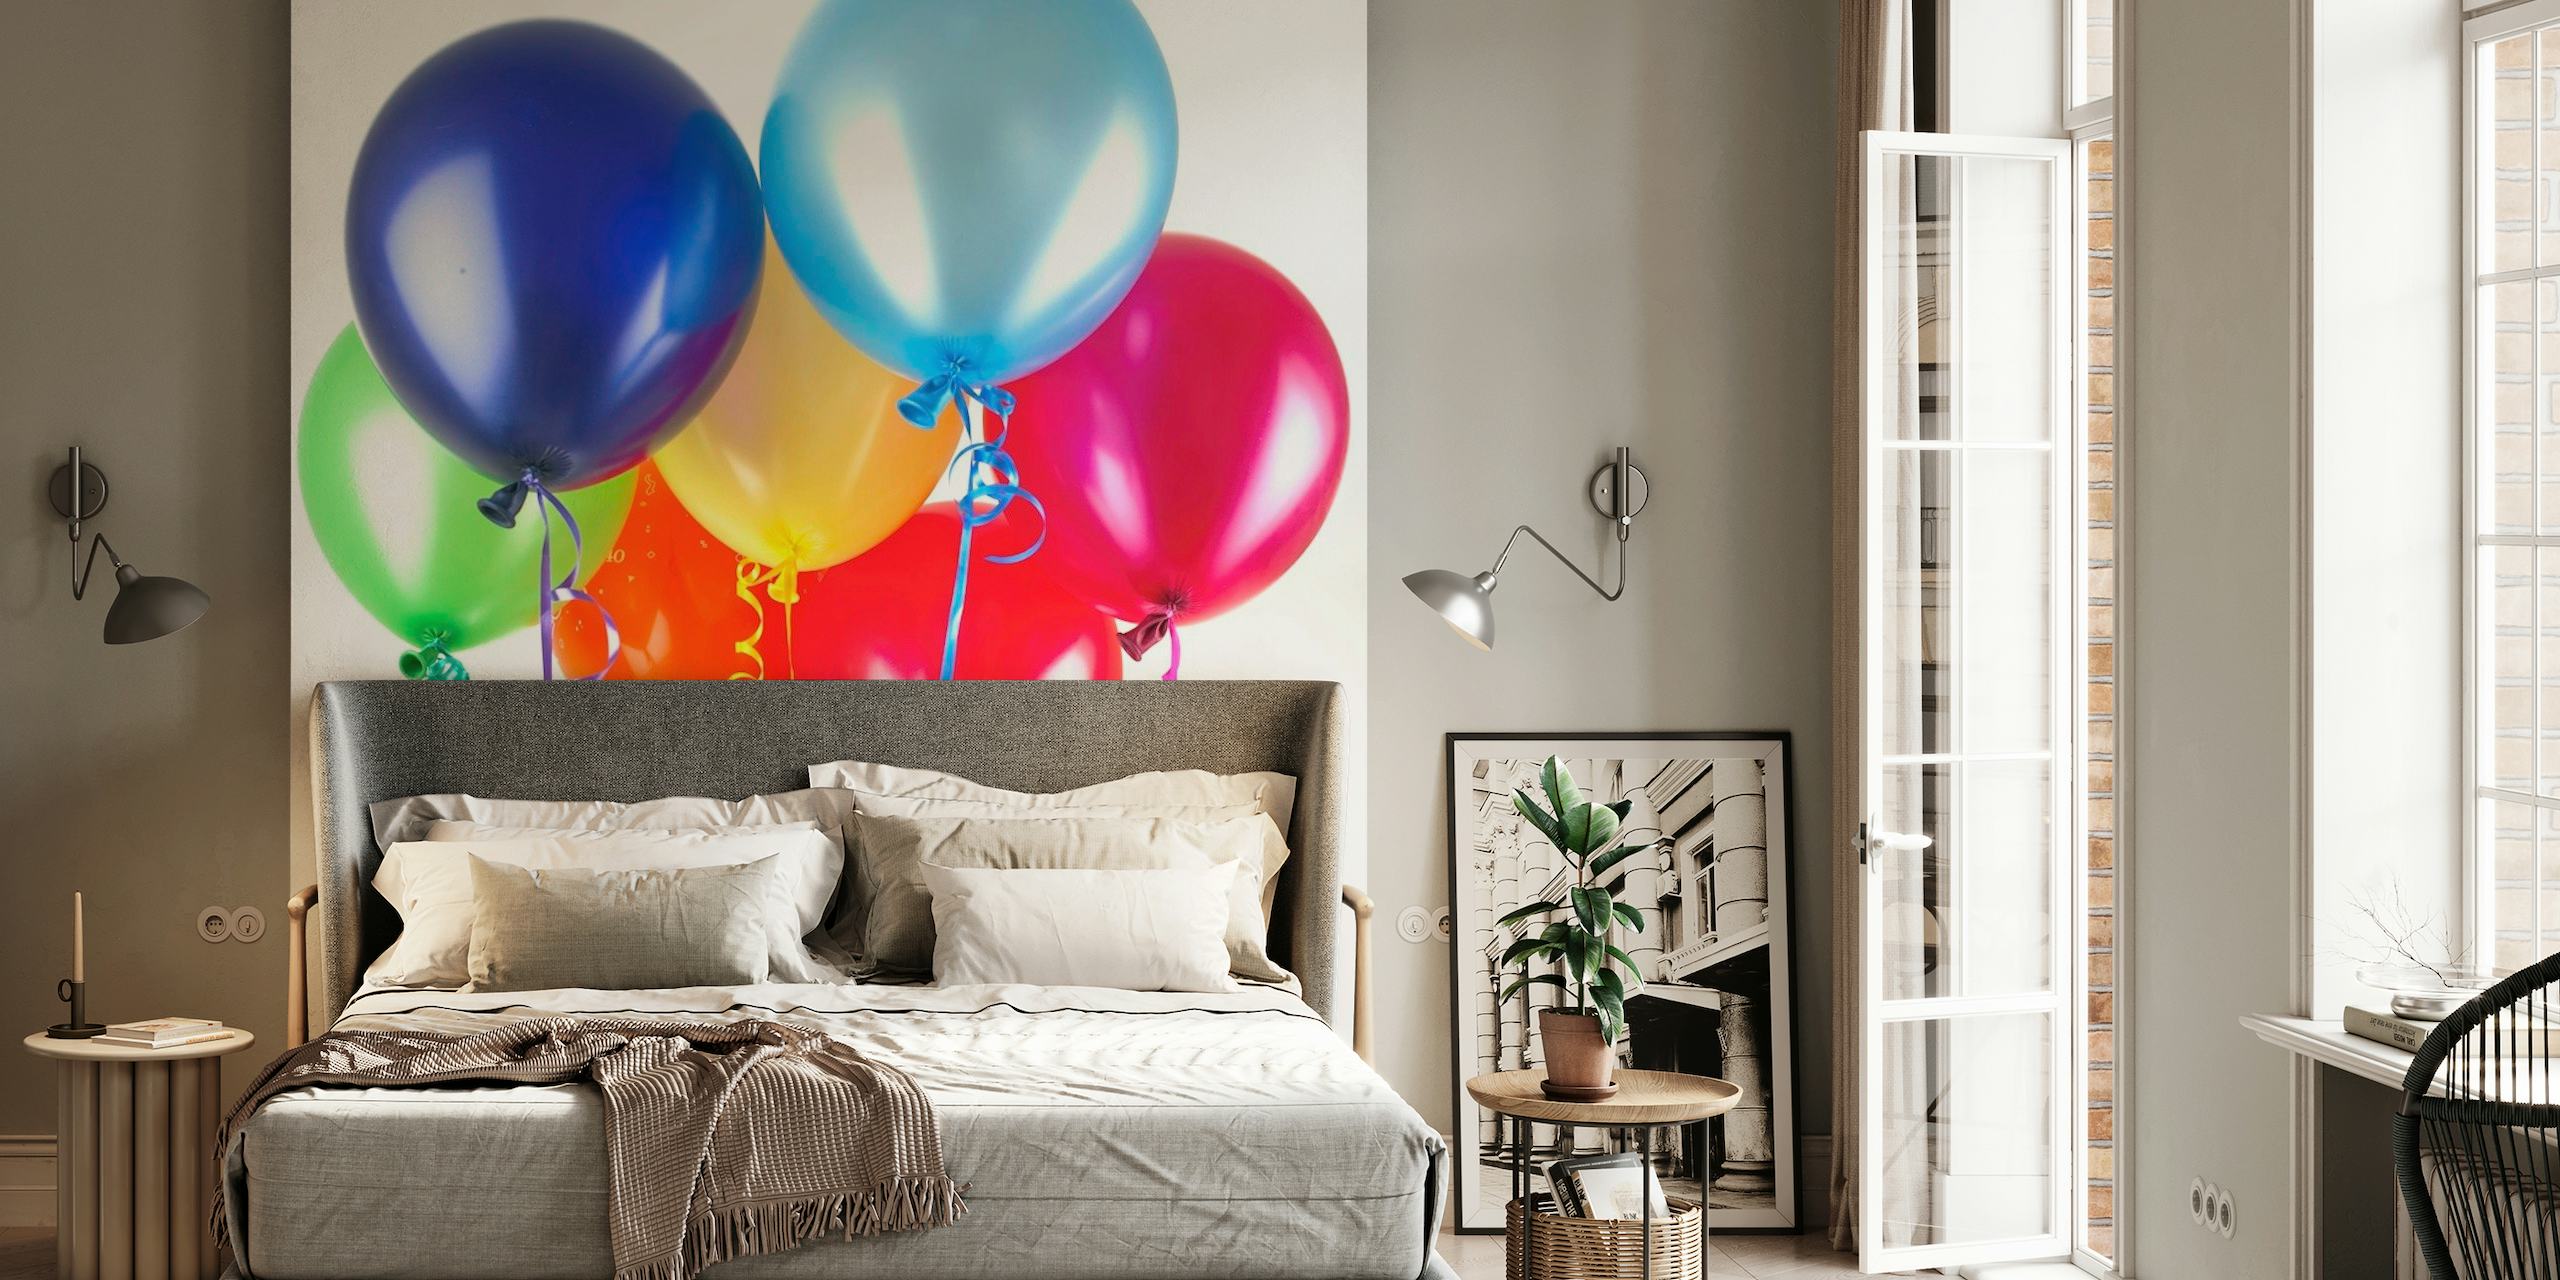 Eine lebendige Auswahl bunter Luftballons auf einer Fototapete